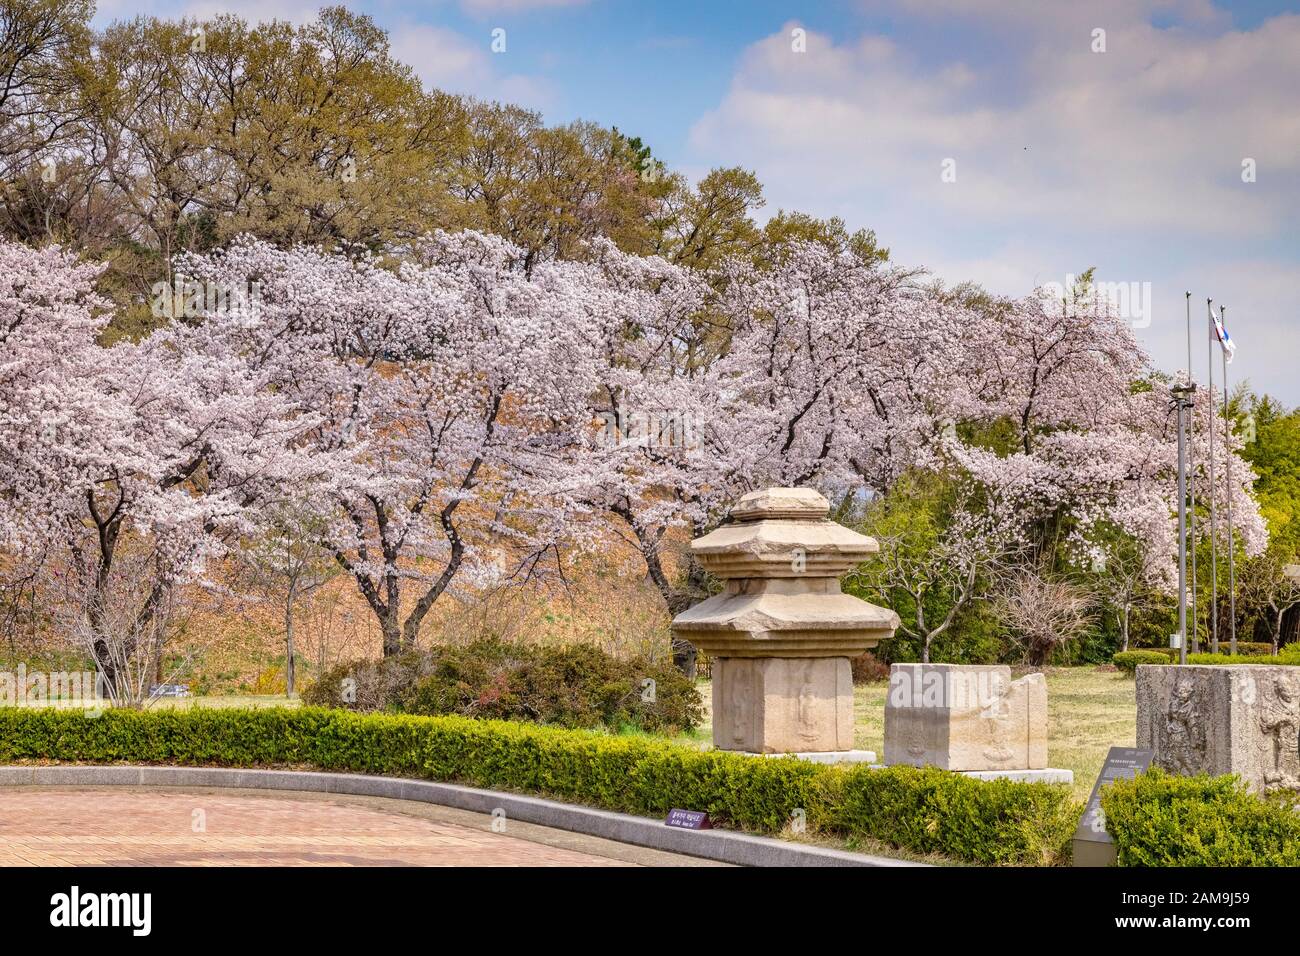 31 marzo 2019: Gyeongju, Corea del Sud - i fiori di ciliegio e i blocchi di pietra scolpiti nei giardini del Museo Nazionale di Gyeongju. Foto Stock